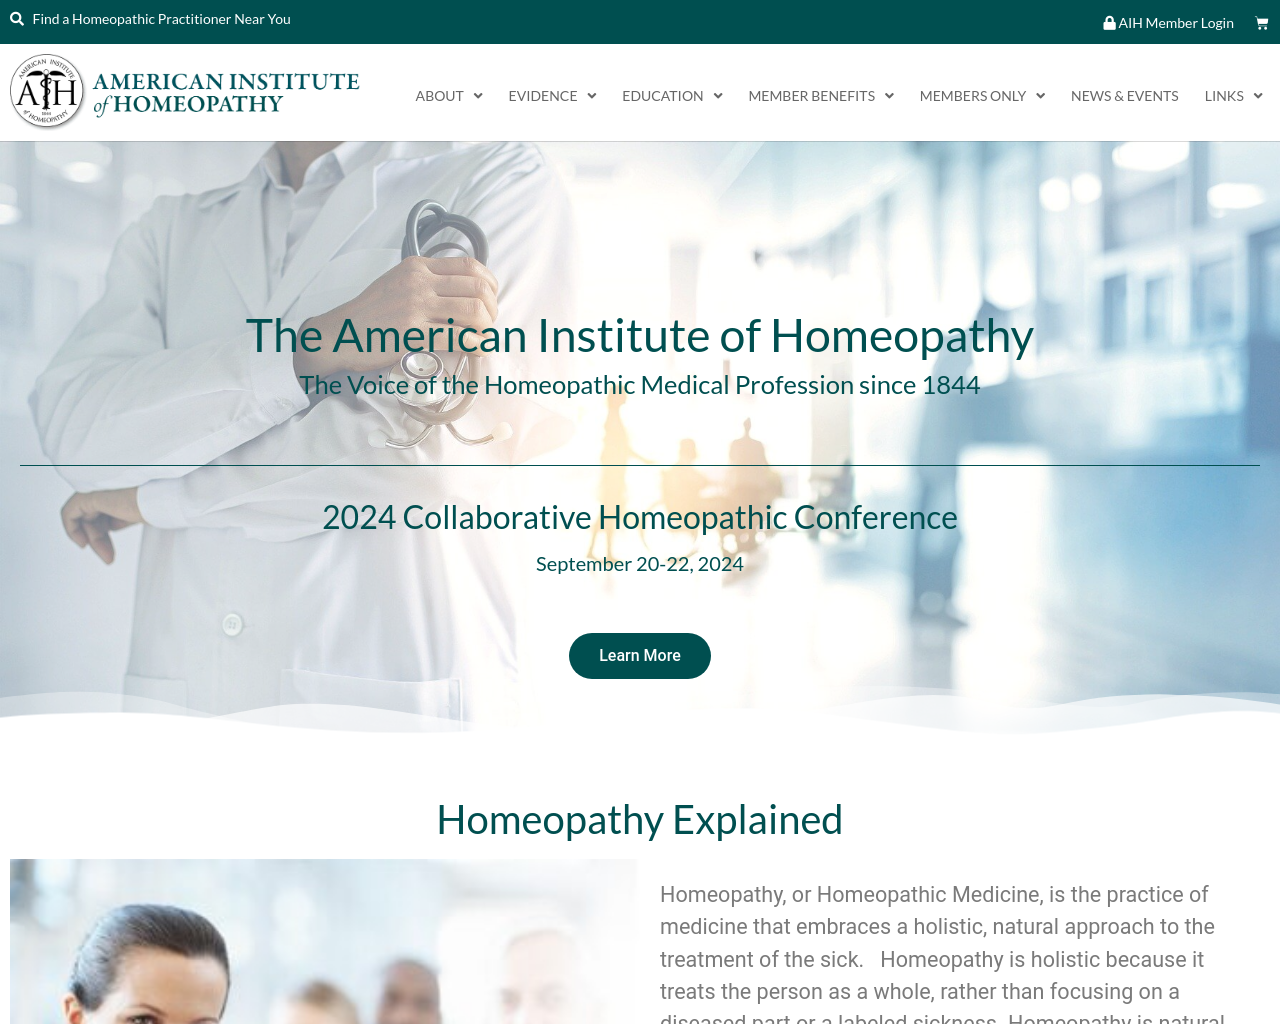 homeopathyusa.org